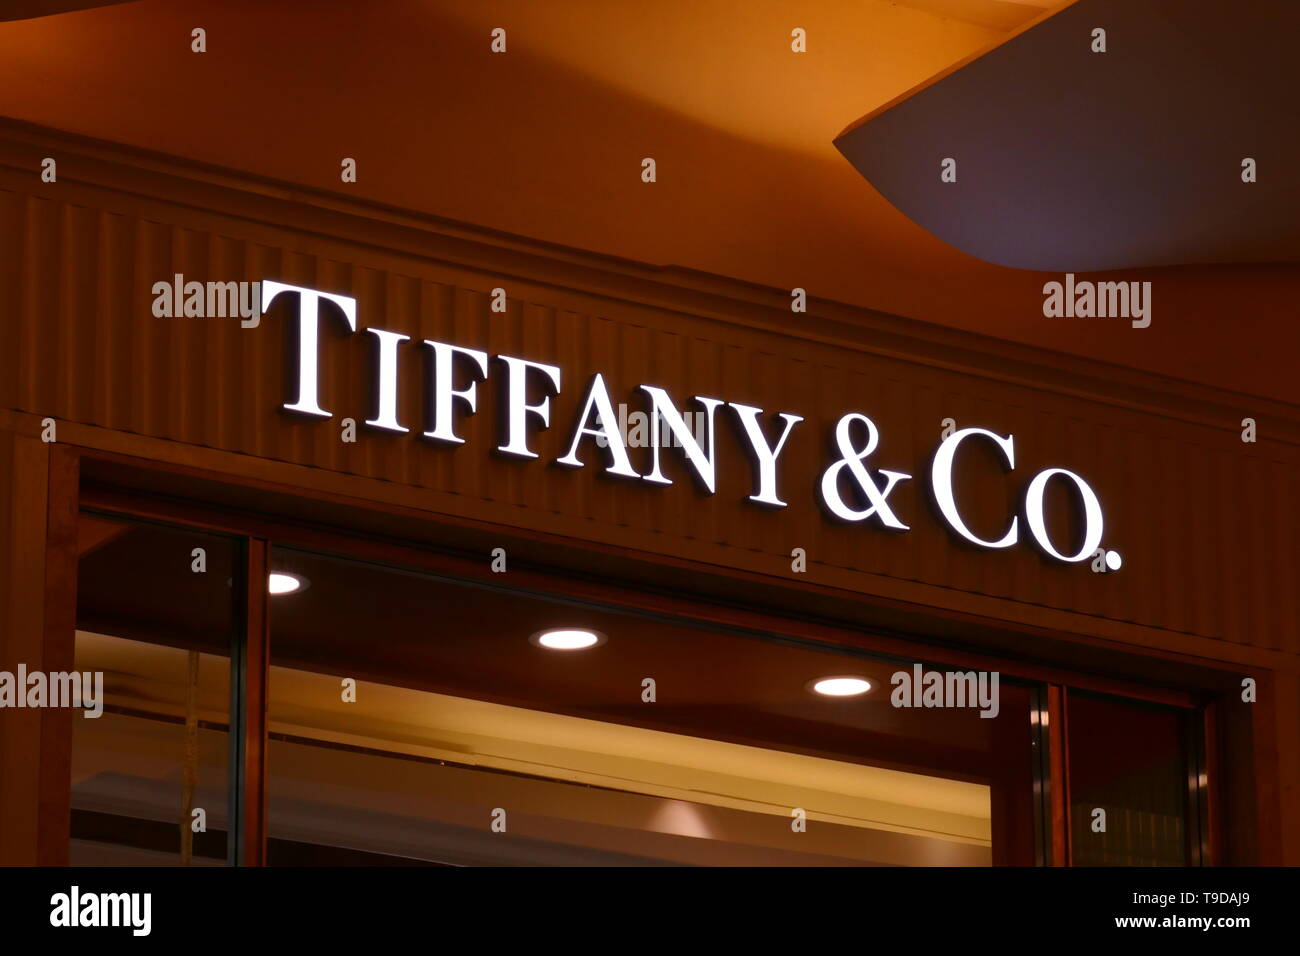 Riad, Arabia Saudita - Diciembre 16, 2018: el logotipo de la marca Tiffany y Co Foto de stock